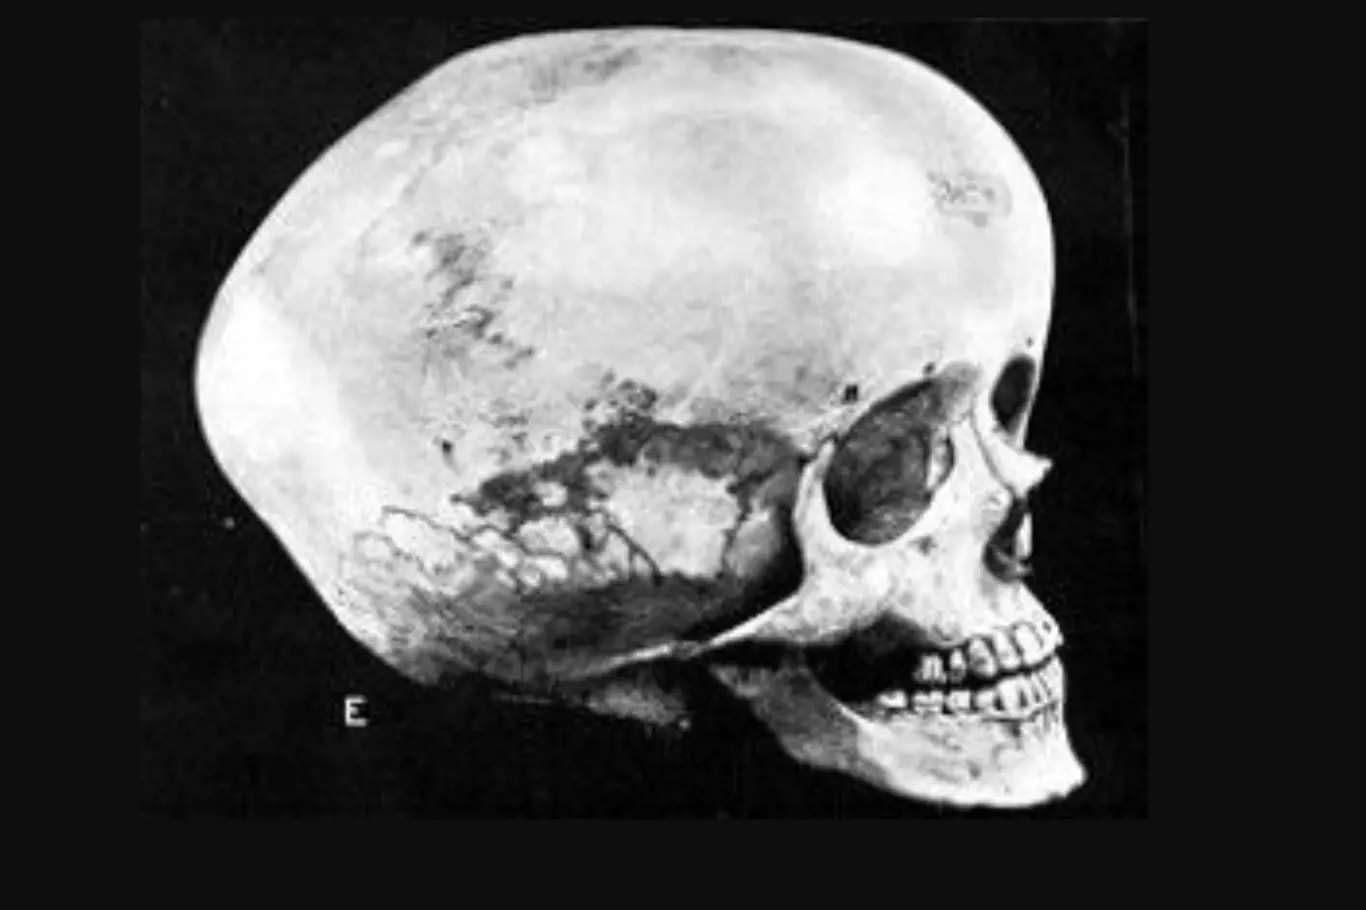 Hydrocefalická lebka často falešně prezentovaná jako boskopoidní lebka